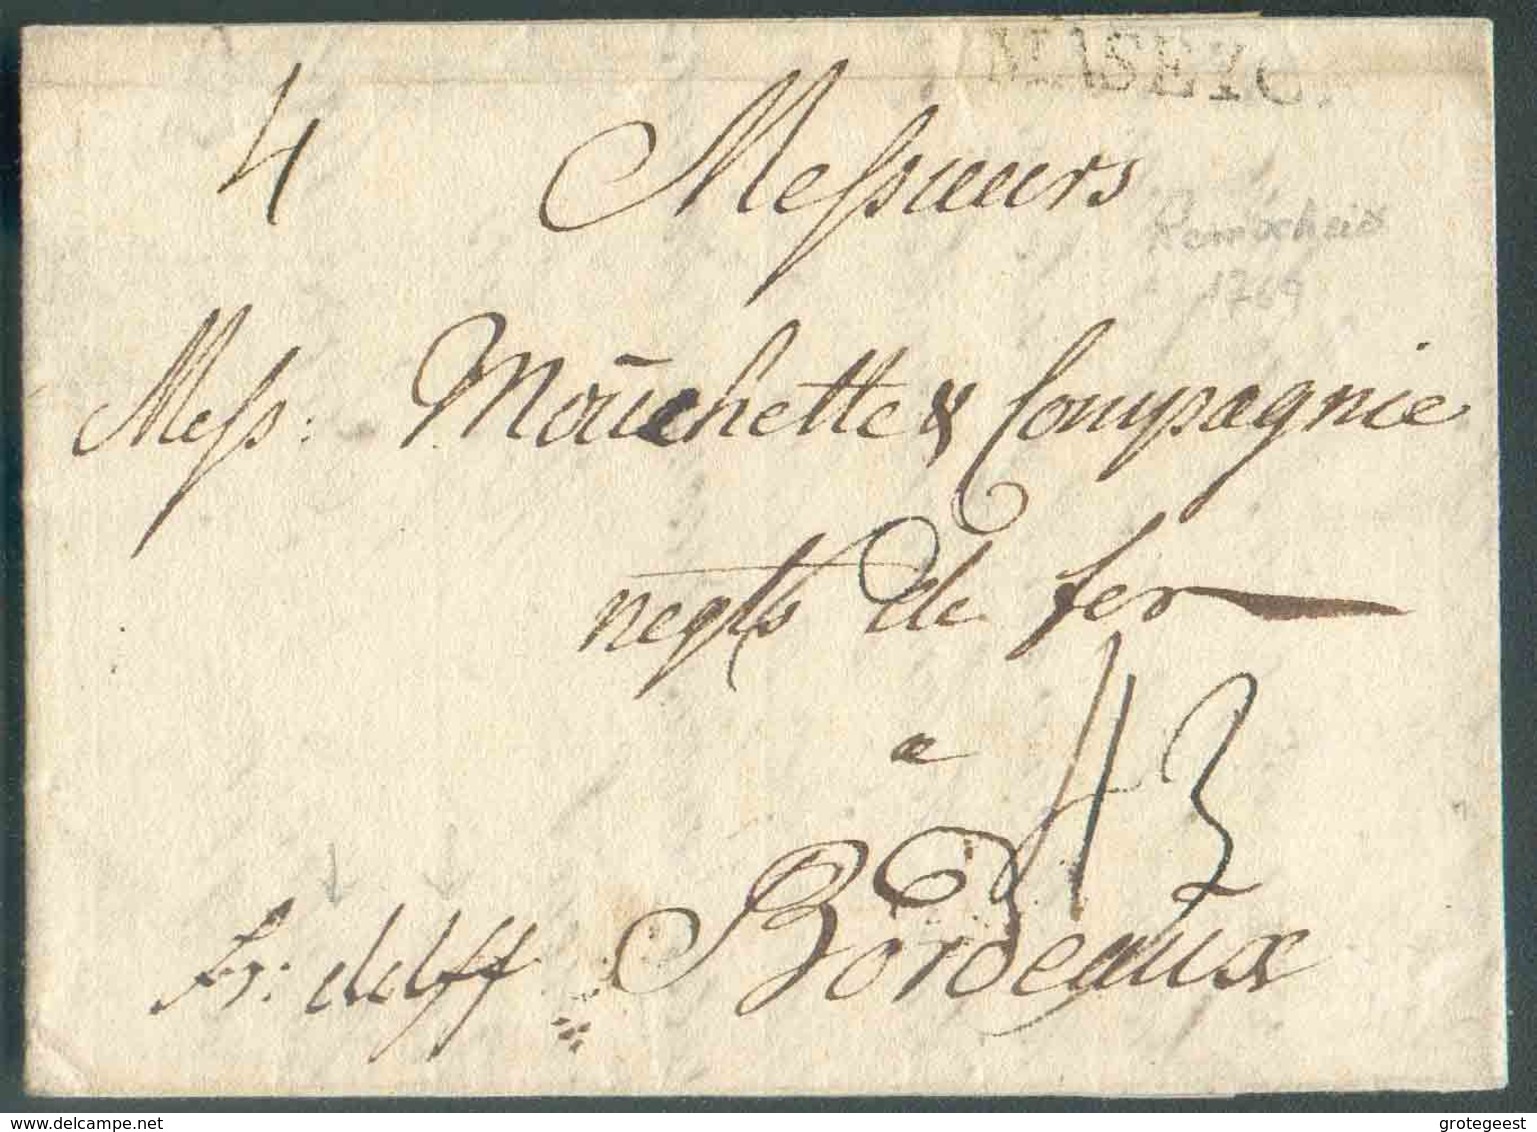 LAC Datée De REMSCHEID Le 16 Mars 1769 + Griffe MASEYCK Et Manuscrit 'fr.dslff' (franco Dusseldorff) Vers Bordeaux; Port - 1714-1794 (Austrian Netherlands)